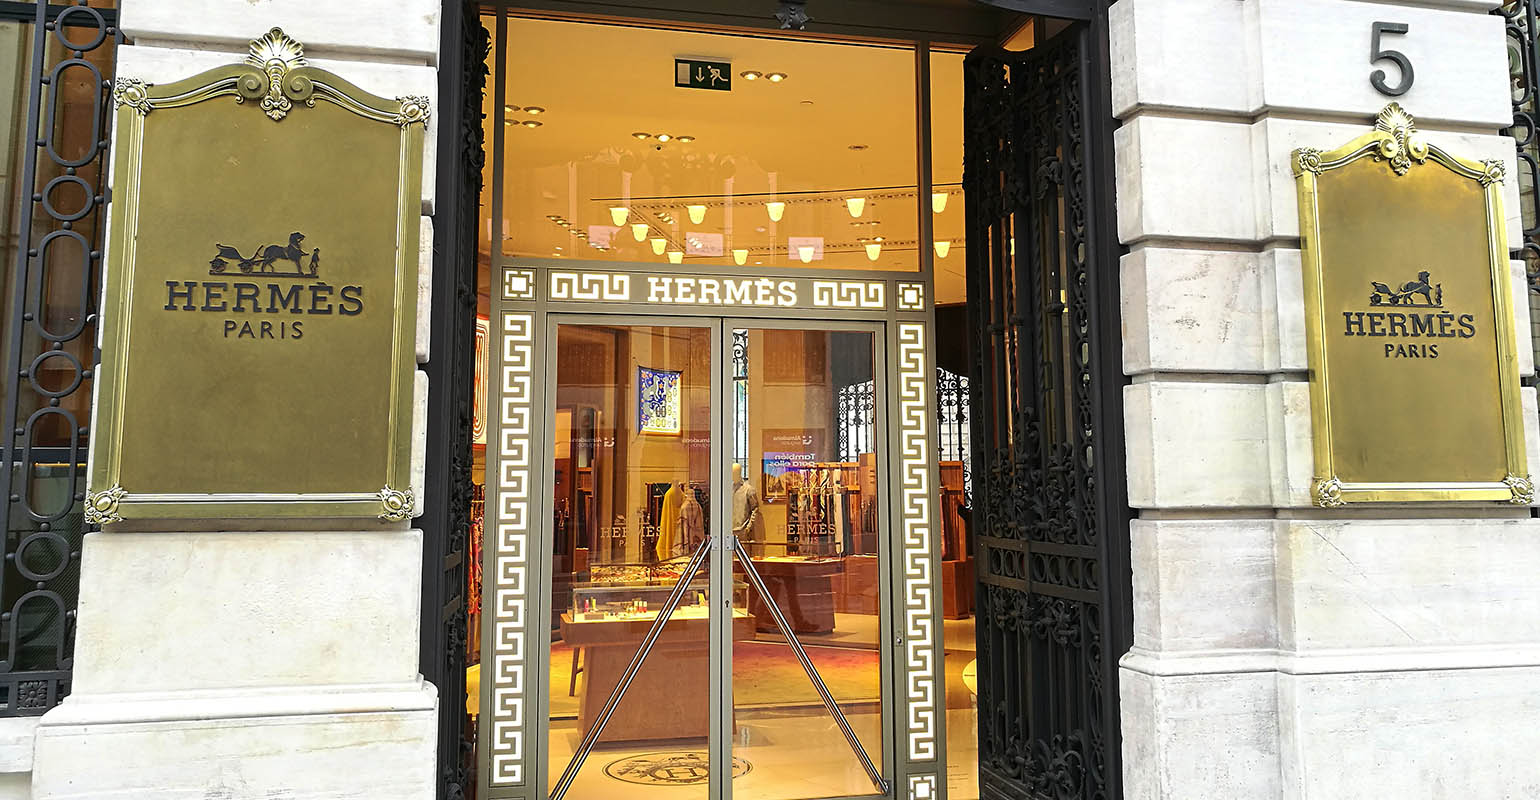 Hermès : Nicolas Puech wants to leave h | Fanclub